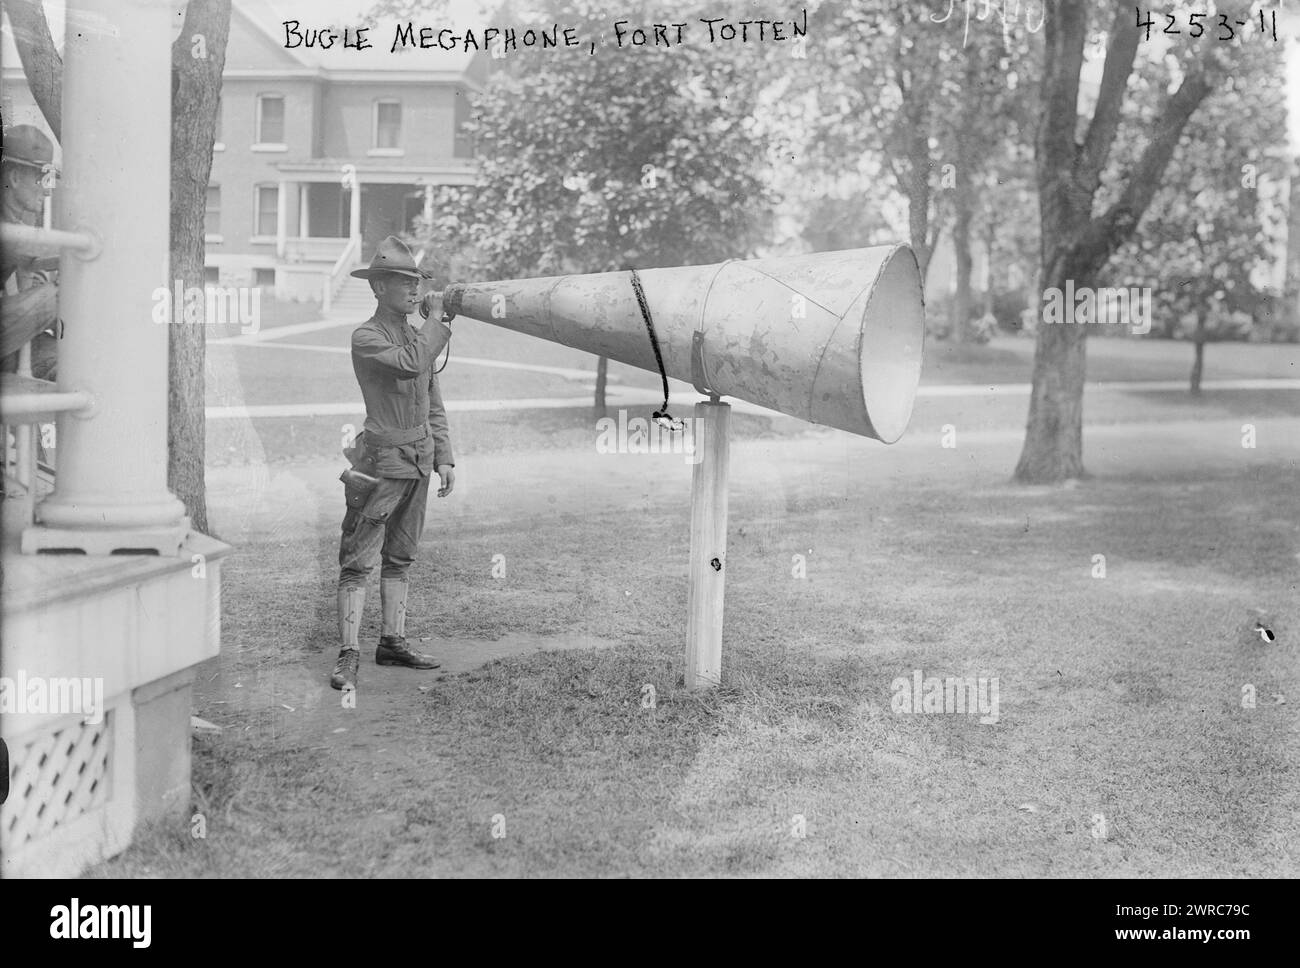 Bugle Megaphone, Fort Totten, photographie montre un soldat utilisant un mégaphone Bugle à Fort Totten, Queens, New York City pendant la première Guerre mondiale, 1917 juillet 3, Guerre mondiale, 1914-1918, négatifs en verre, 1 négatif : verre Banque D'Images